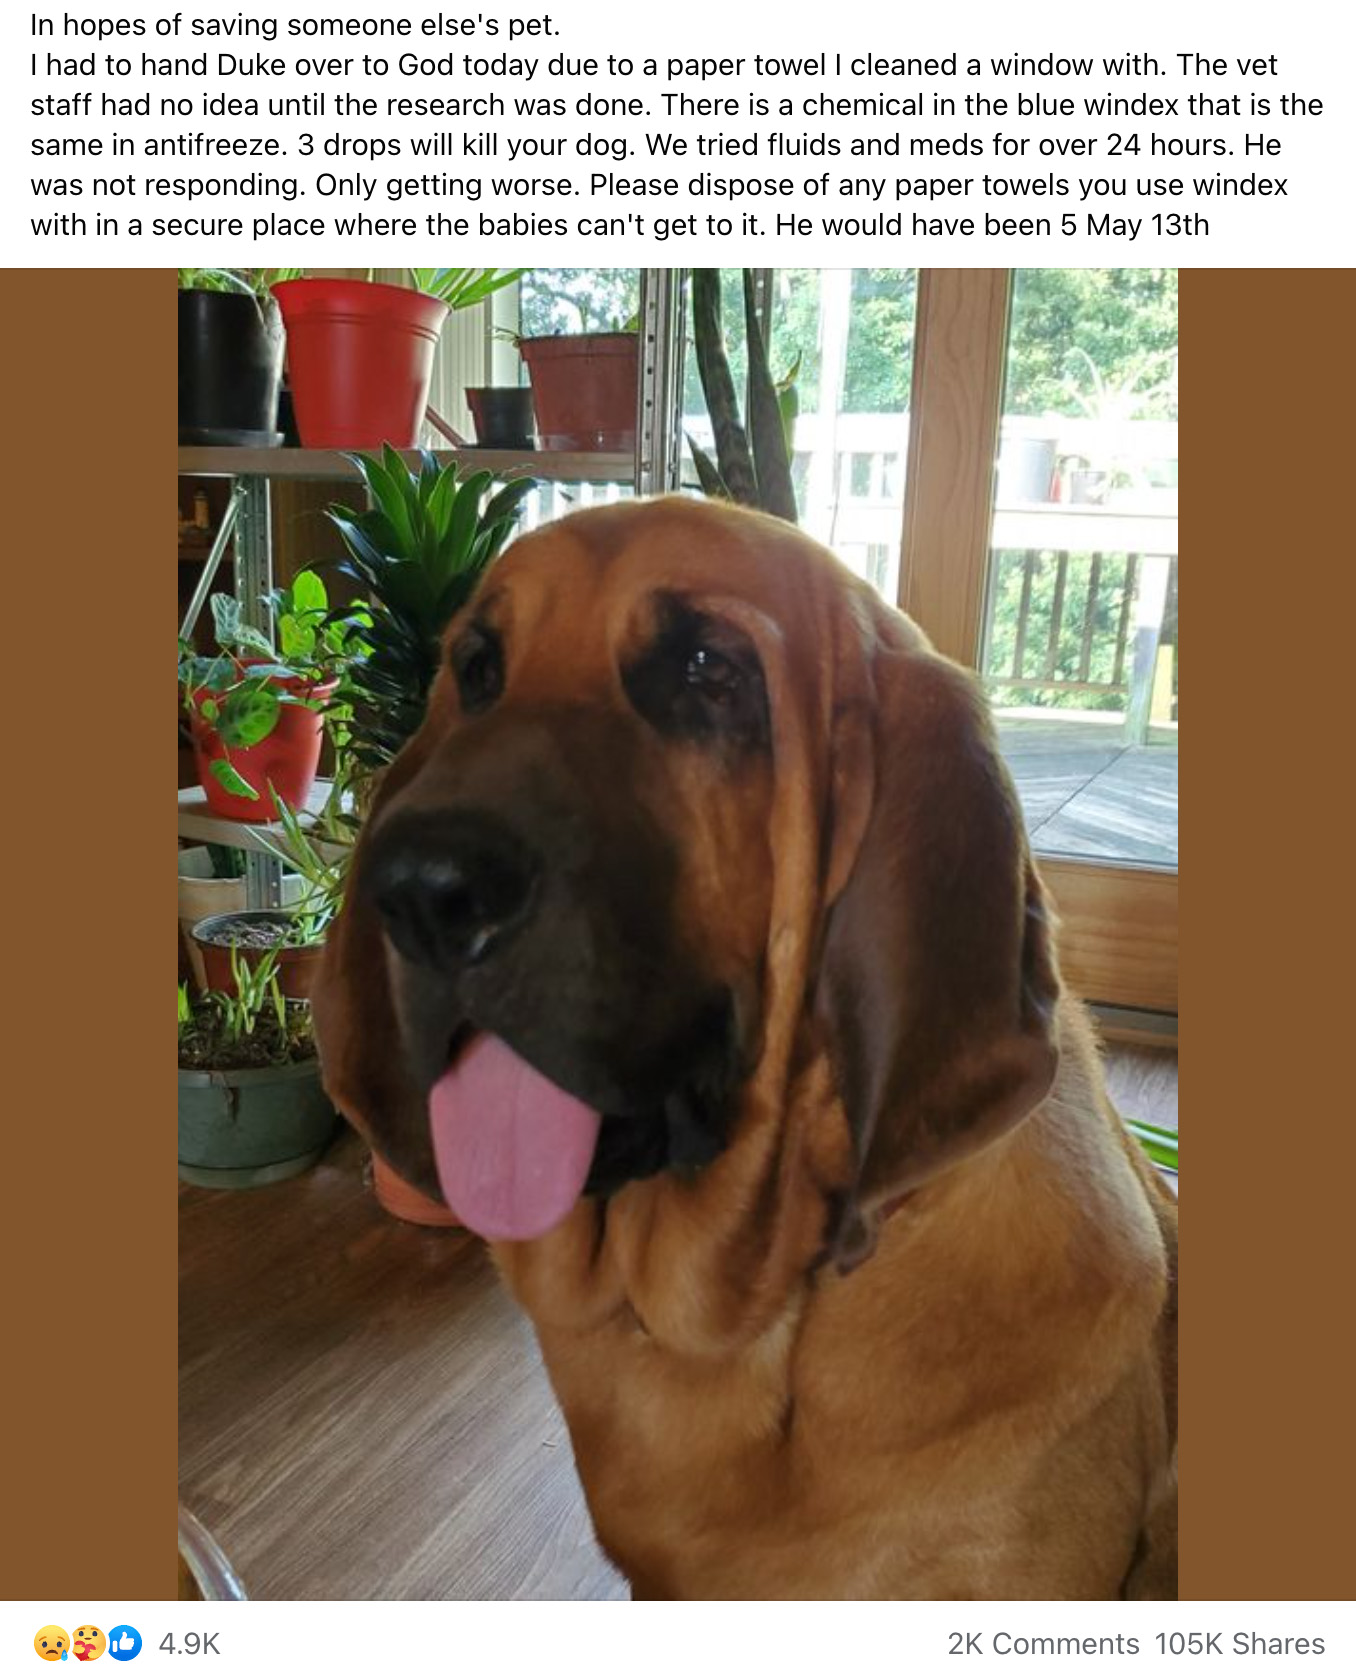 Una publicación de Facebook decía que el limpiador de vidrios Windex mató a un perro llamado Duke y que era venenoso y tóxico y tenía ingredientes similares al anticongelante.